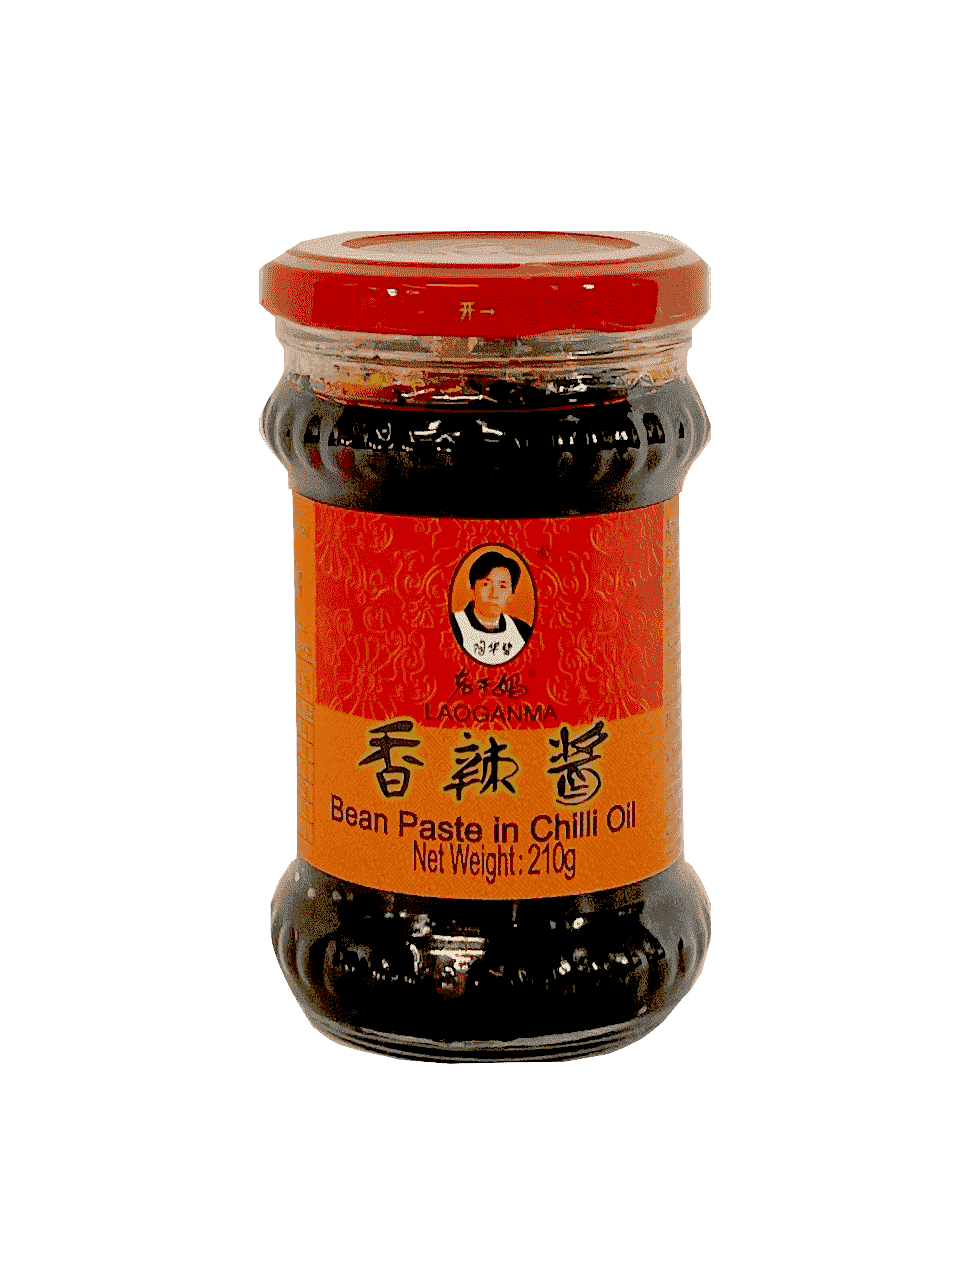 Bean paste in Chili oil 210g Lao Gan Ma China